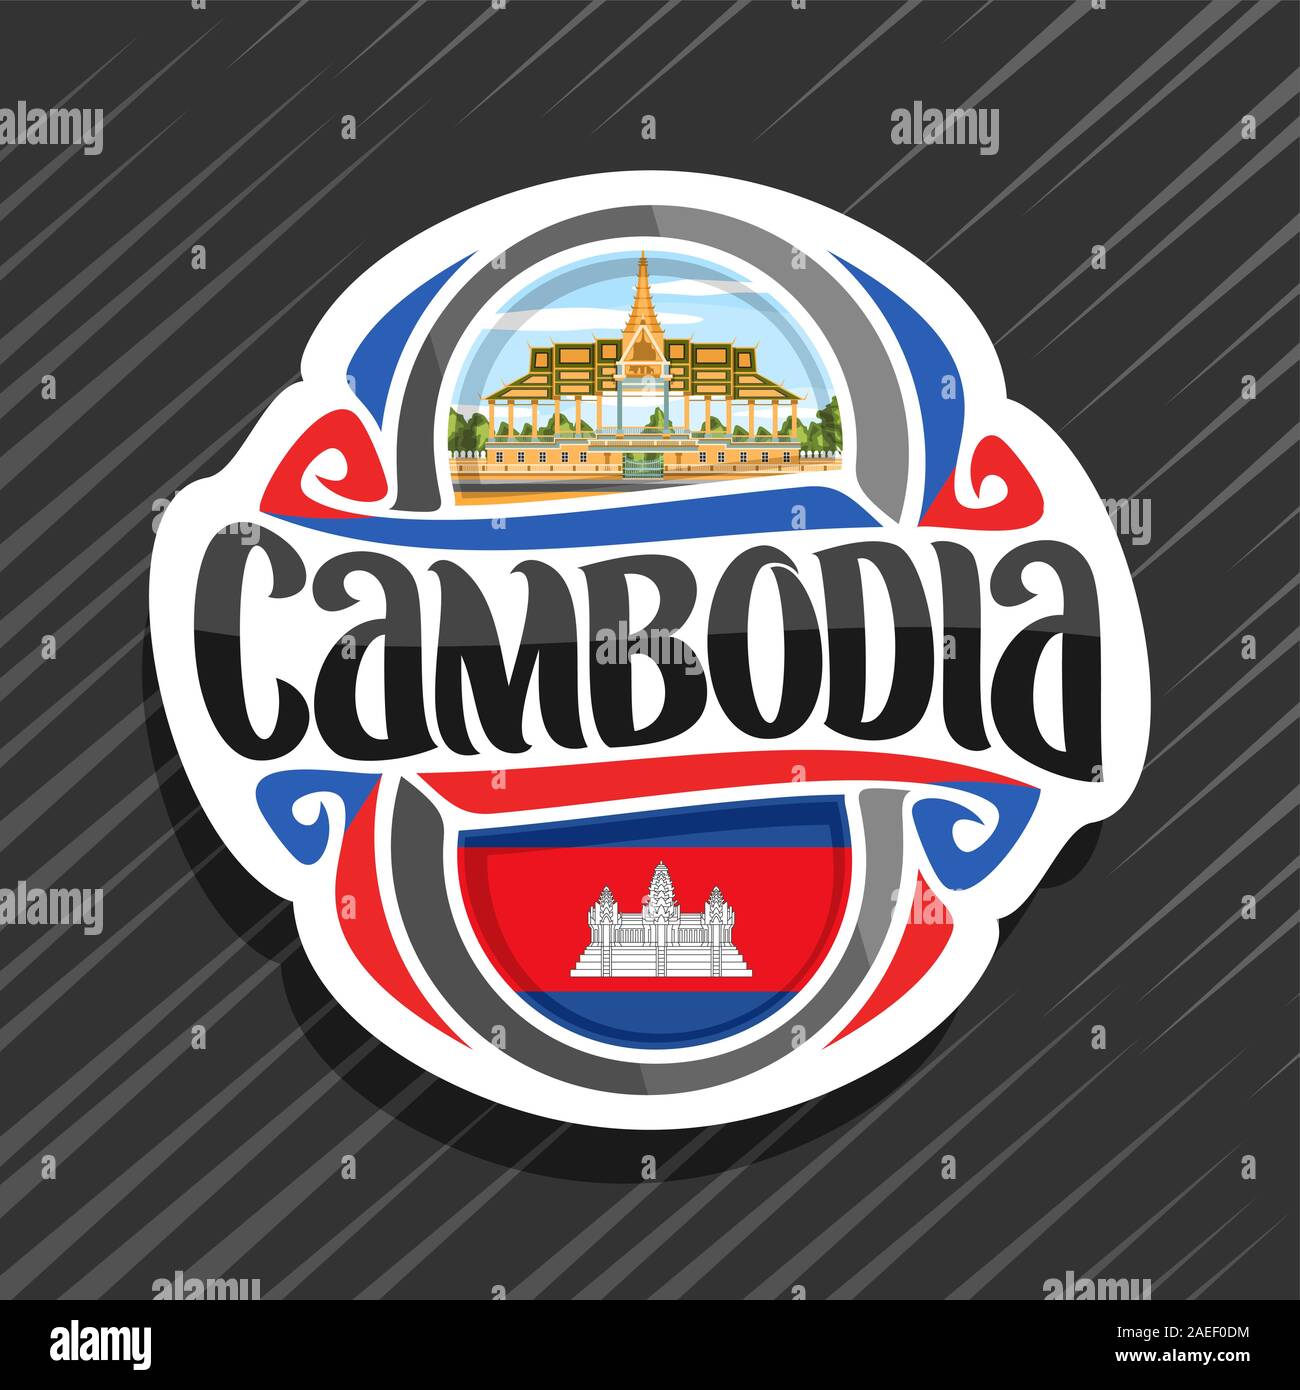 Logo Vector pour Royaume du Cambodge, aimant frigo avec drapeau de l'État cambodgien, pinceau original typeface pour mot cambodge et national symbole cambodgien Illustration de Vecteur